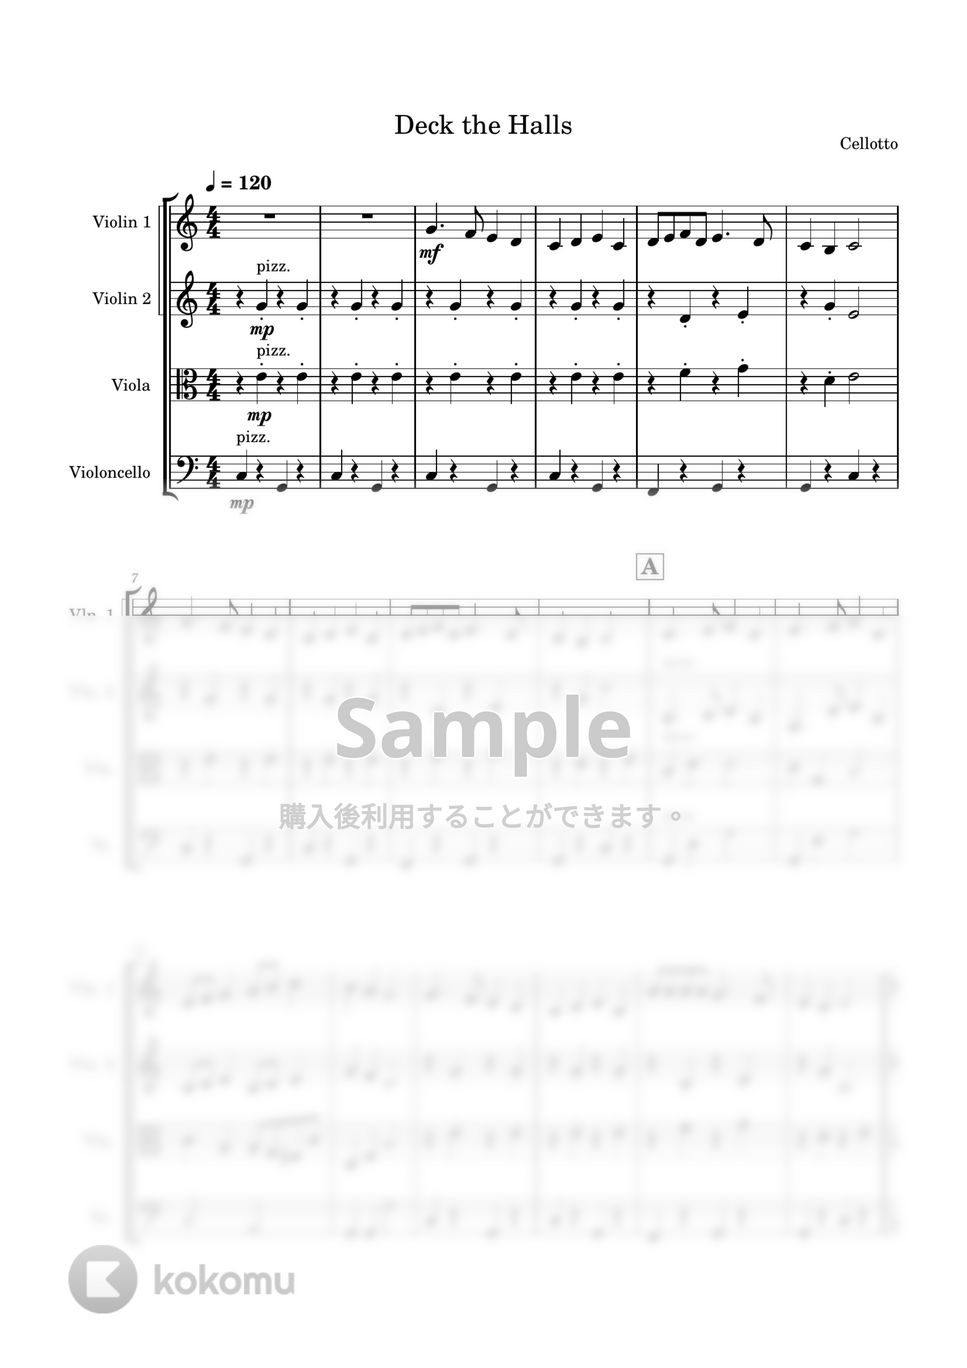 ひいらぎかざろう (弦楽四重奏) by Cellotto